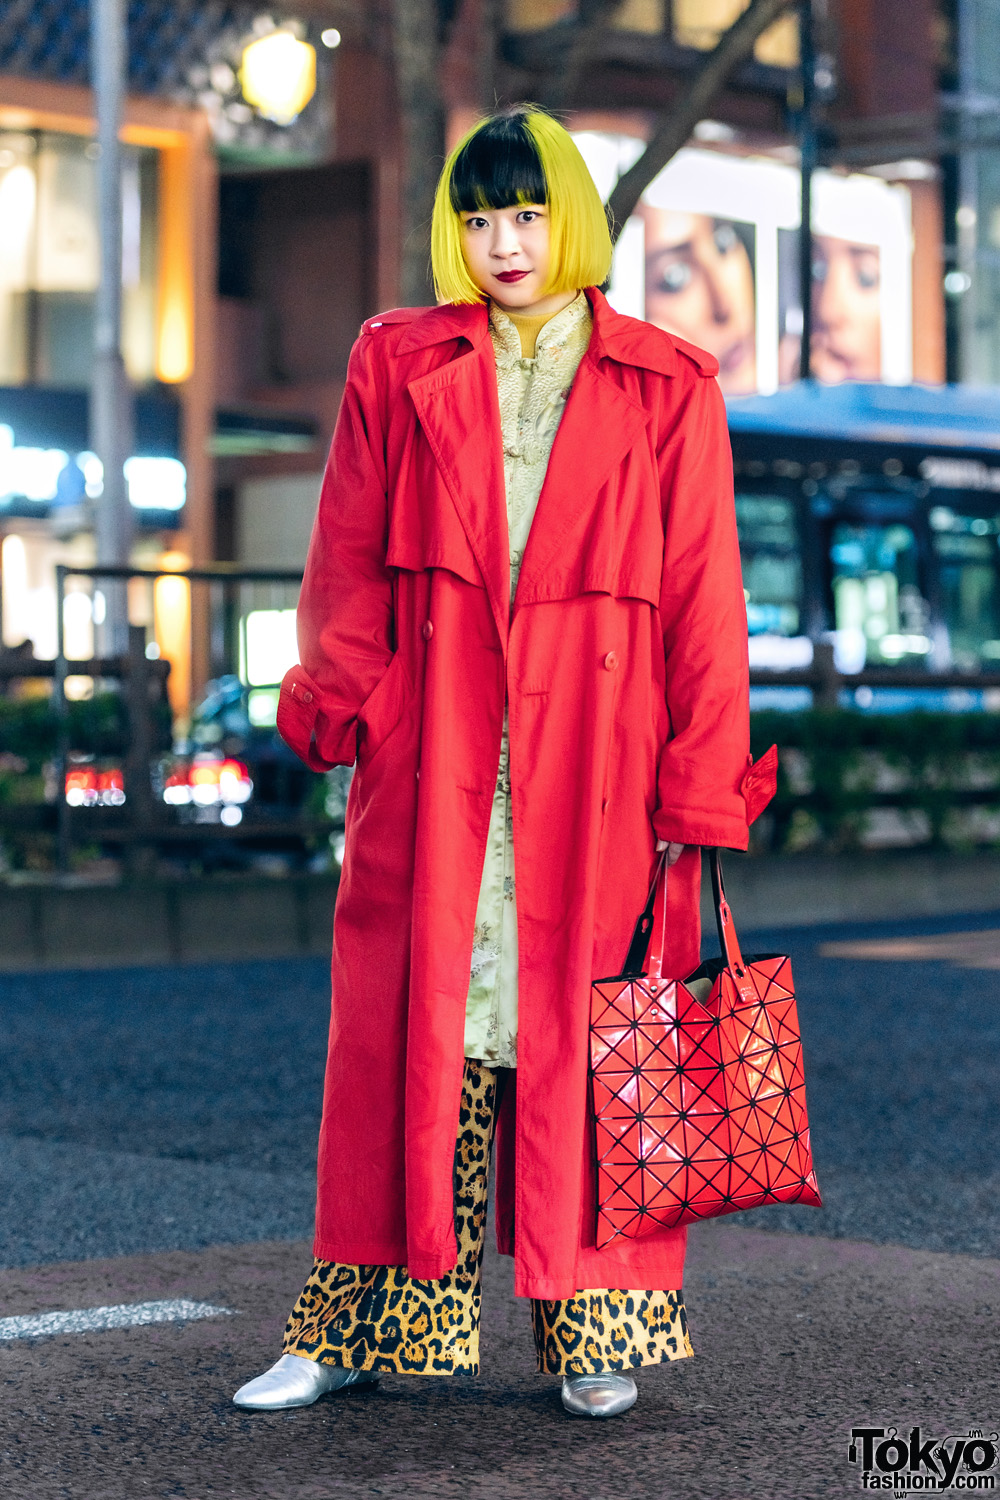 Eclectic Streetwear Look in Tokyo w/ Two-Tone Fringed Bob, Leopard